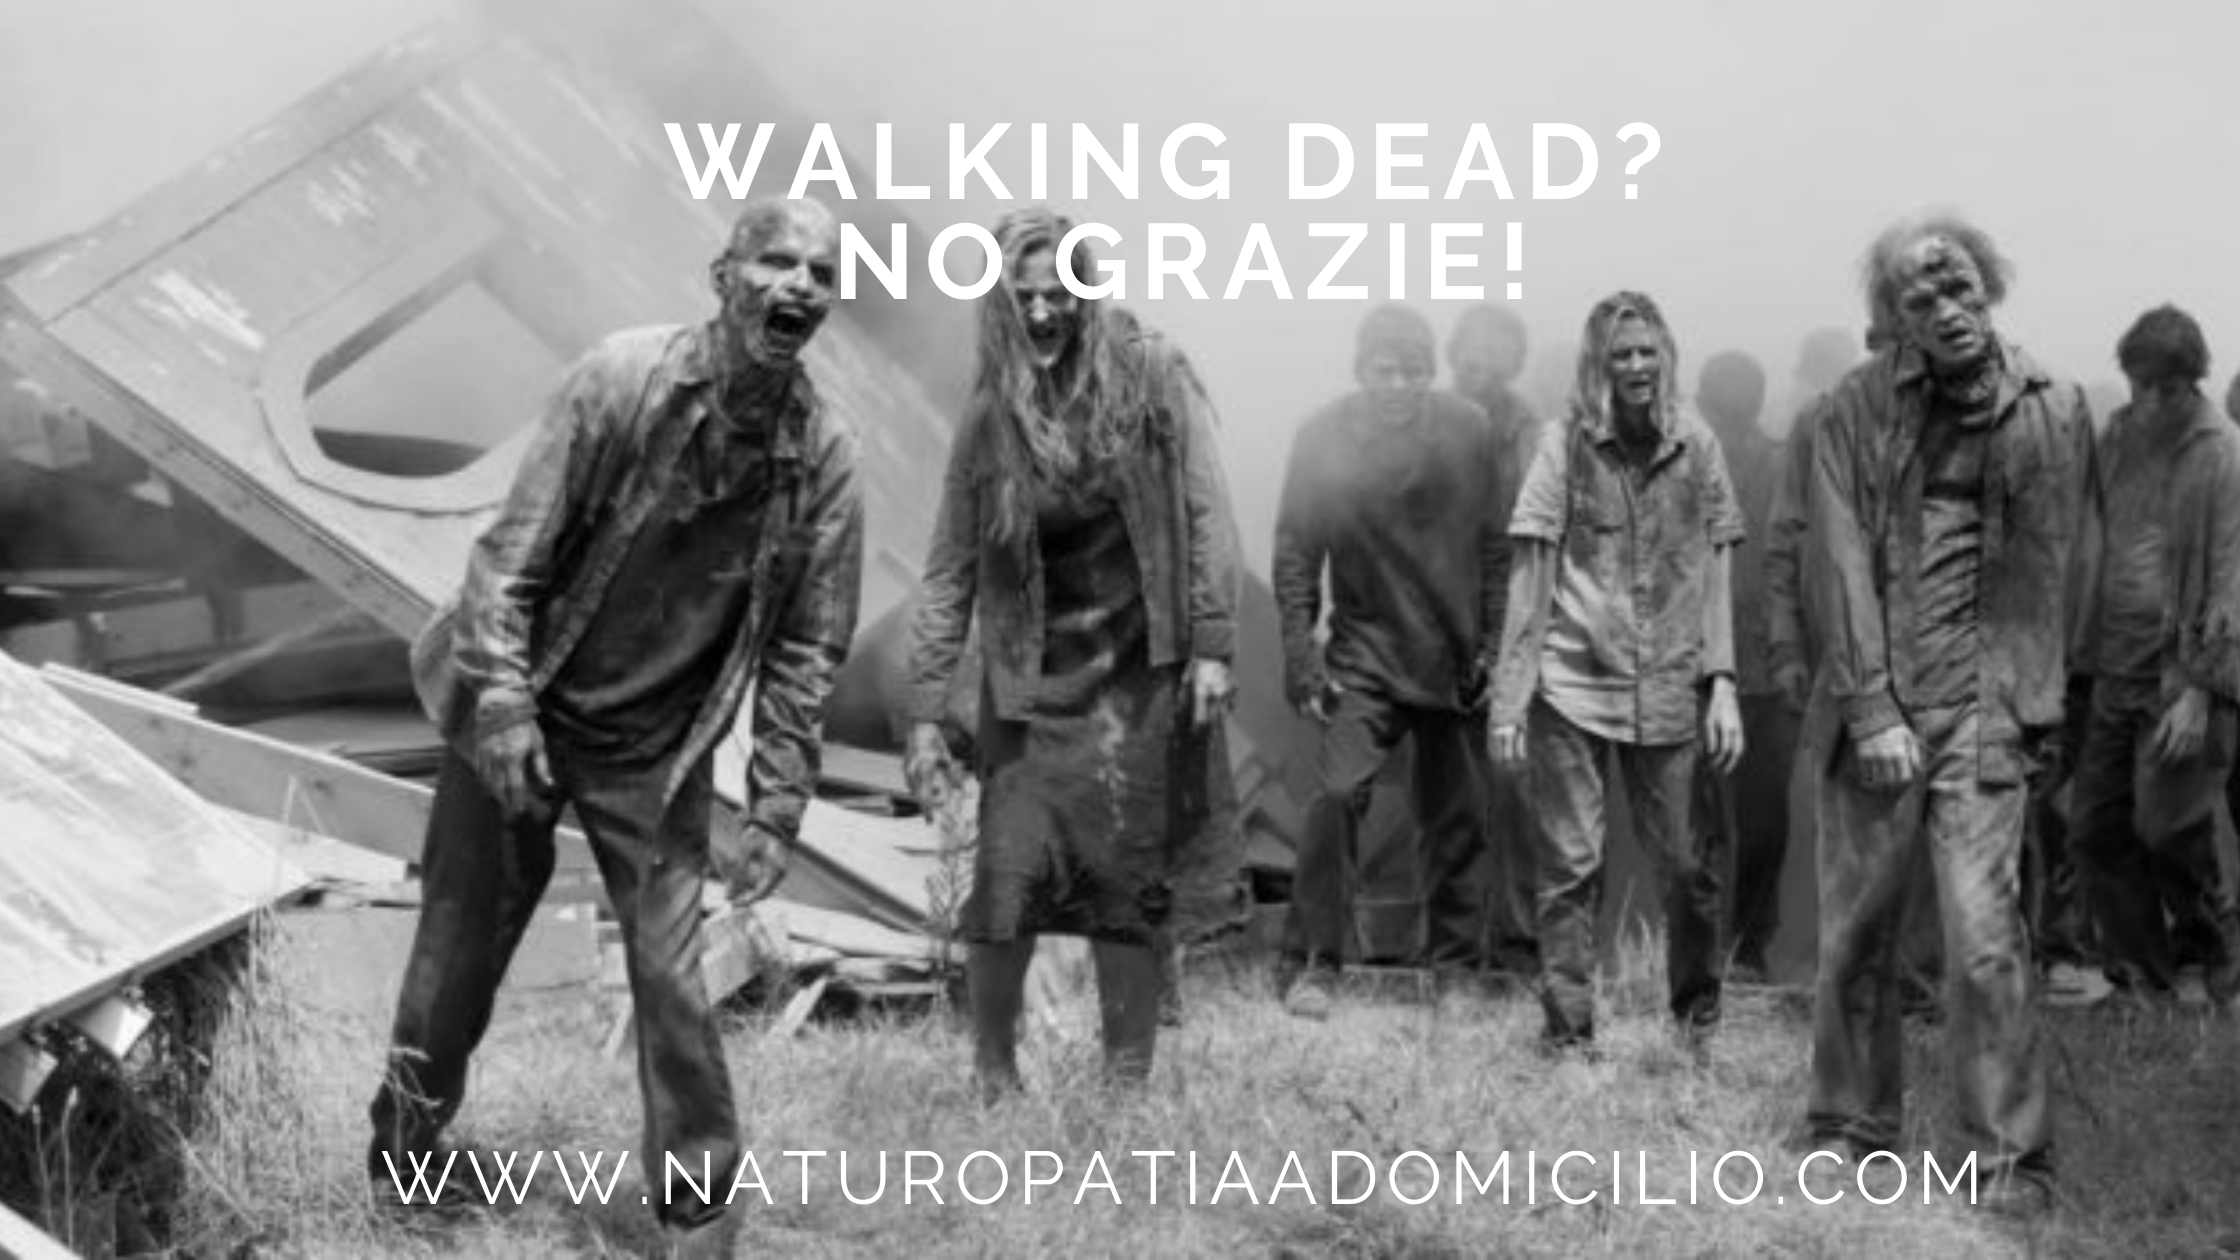 Walking Dead? No Grazie!